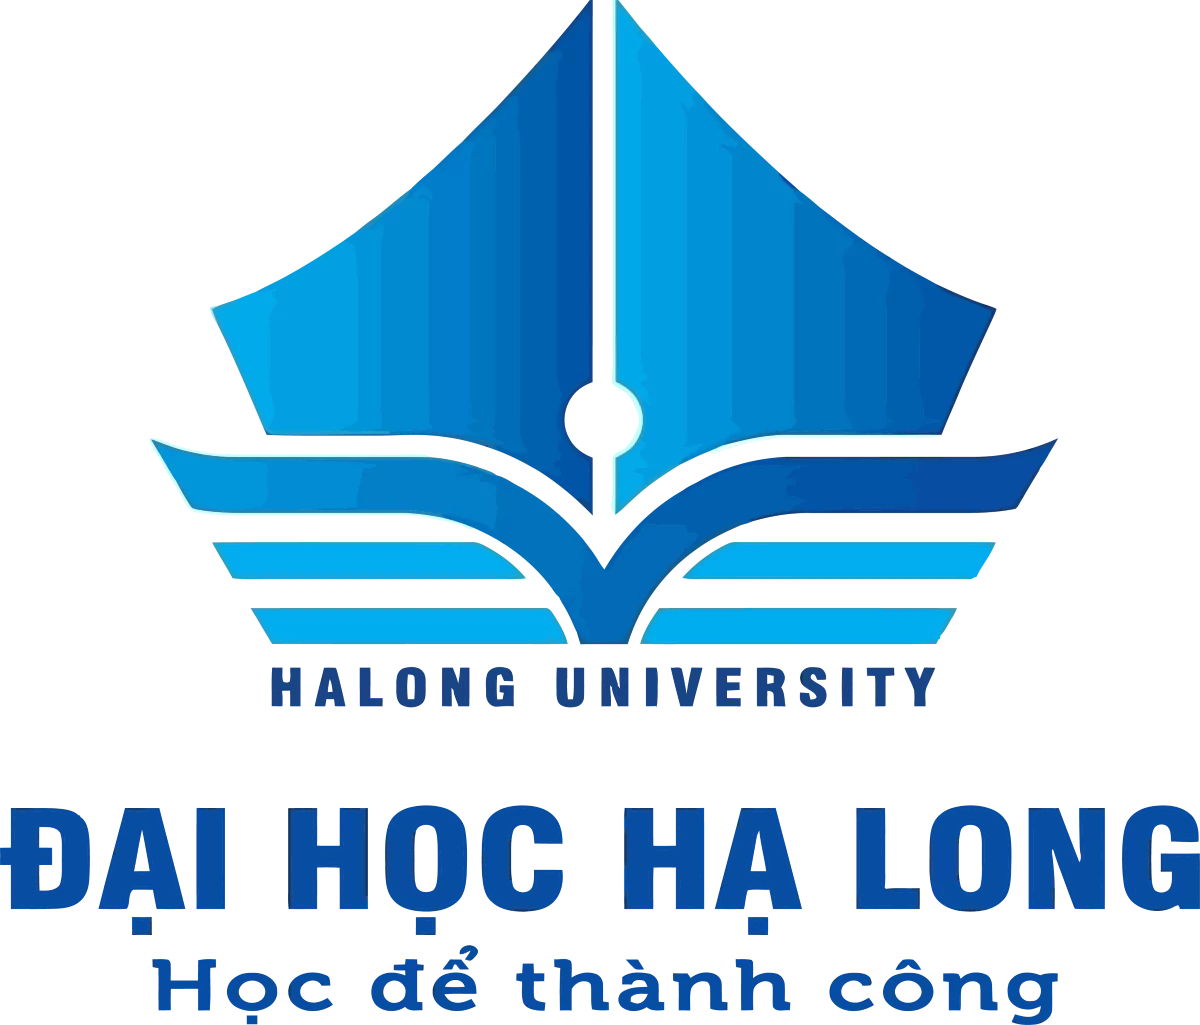 Đại học Hạ Long